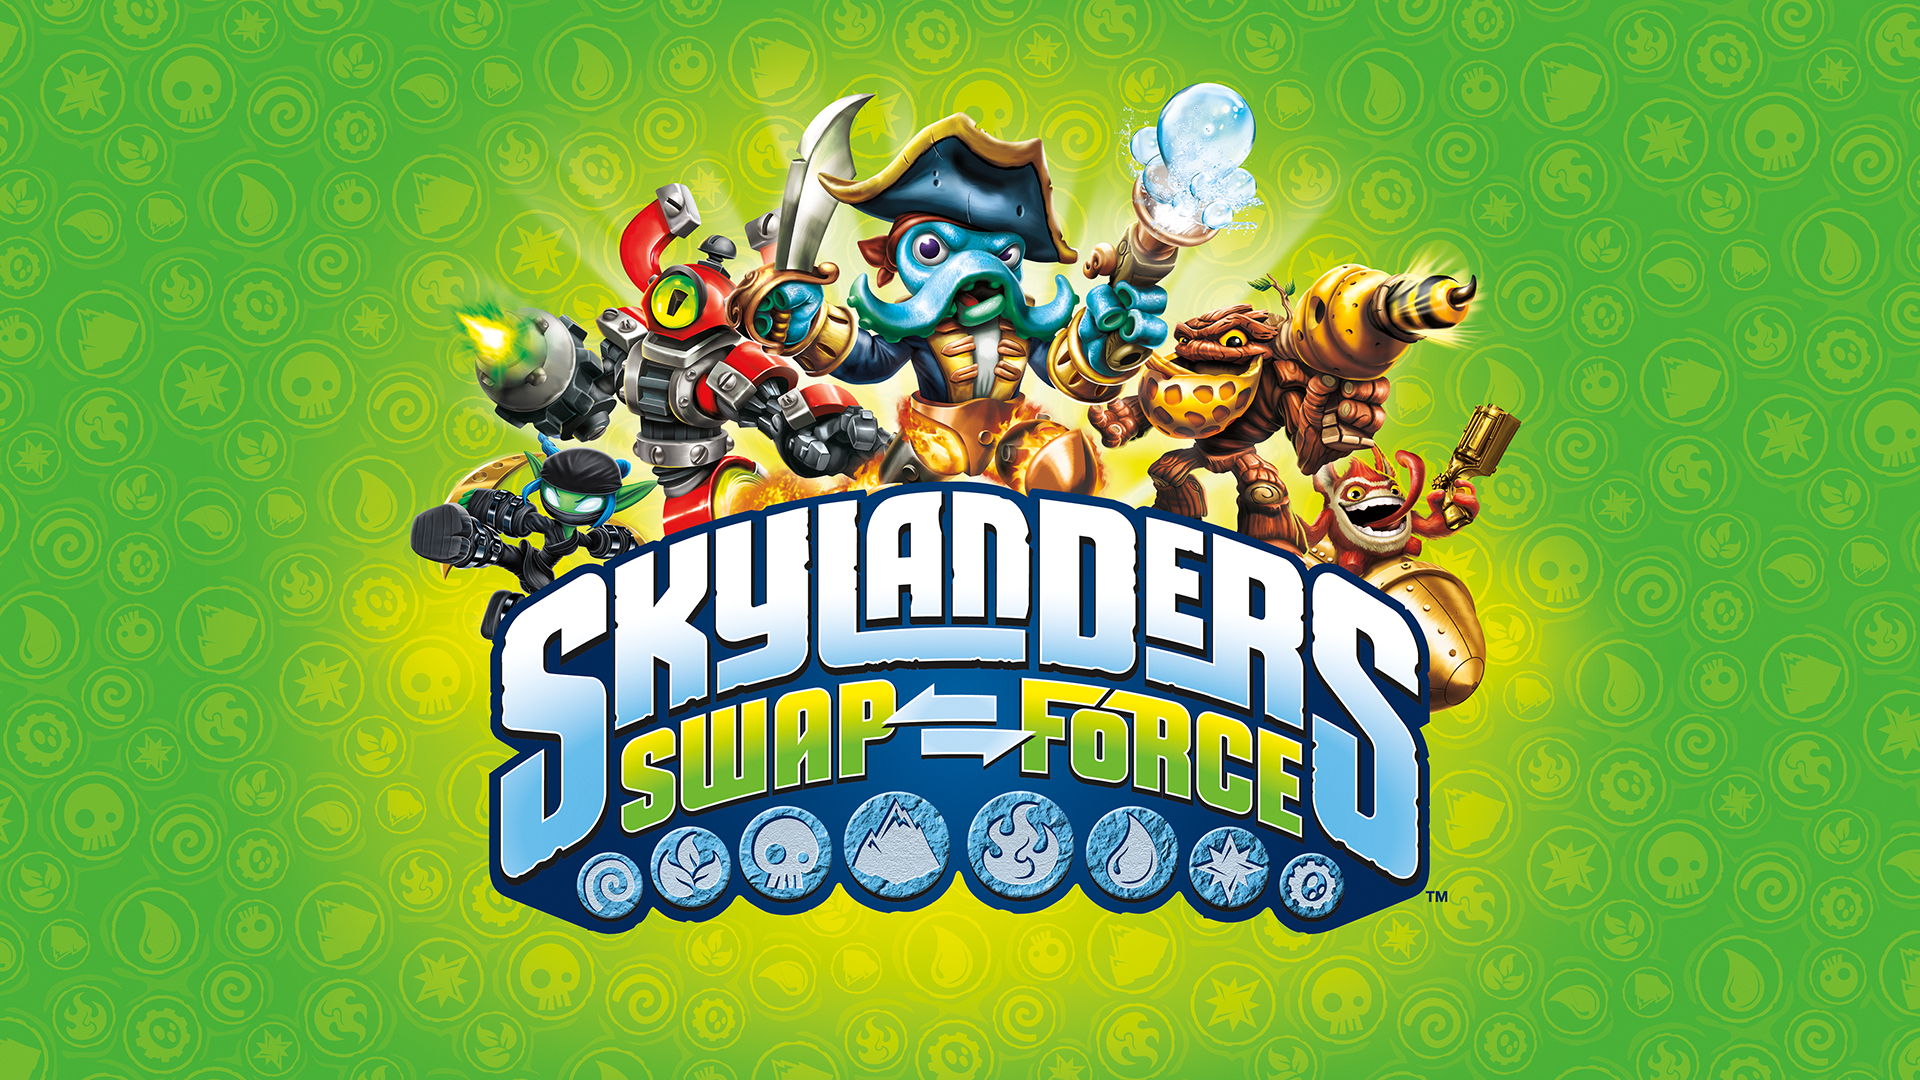 Skylanders swap. Skylanders swap Force. Skylanders Xbox 360. Skylanders swap Force фигурки. Skylanders swap Force игра.